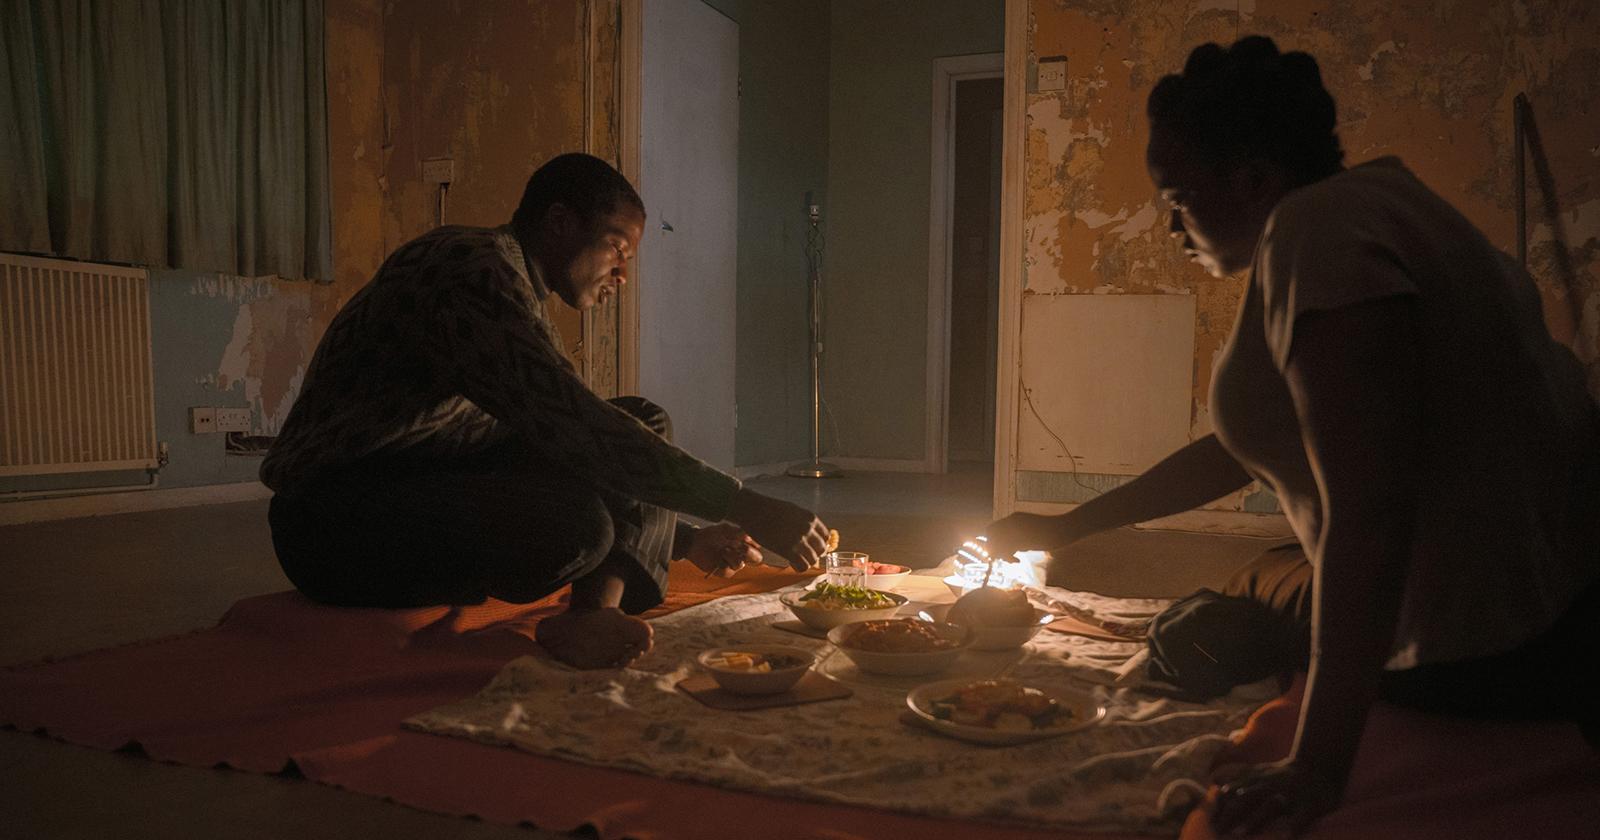 Personajes de Su casa, en una escena oscura, manipulando velas.